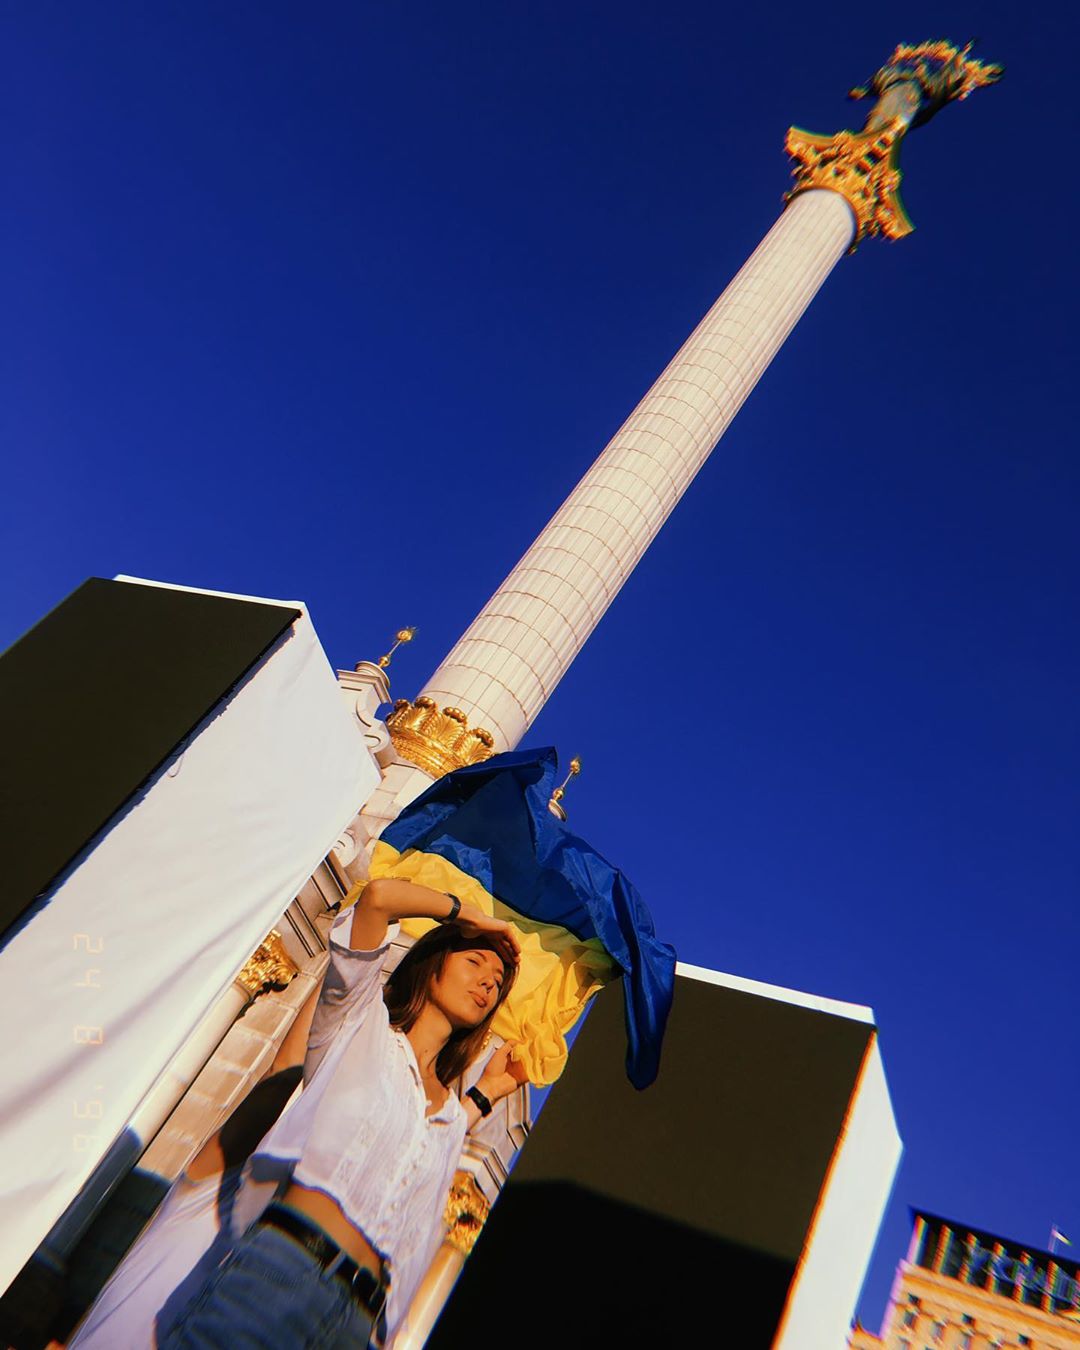 Начнем мы нашу подборку с самой традиционной фотографии, которая только возможна - монумент Независимости, украинский флаг и бескрайнее синее небо. Фото - @dsh.miroshnichenko